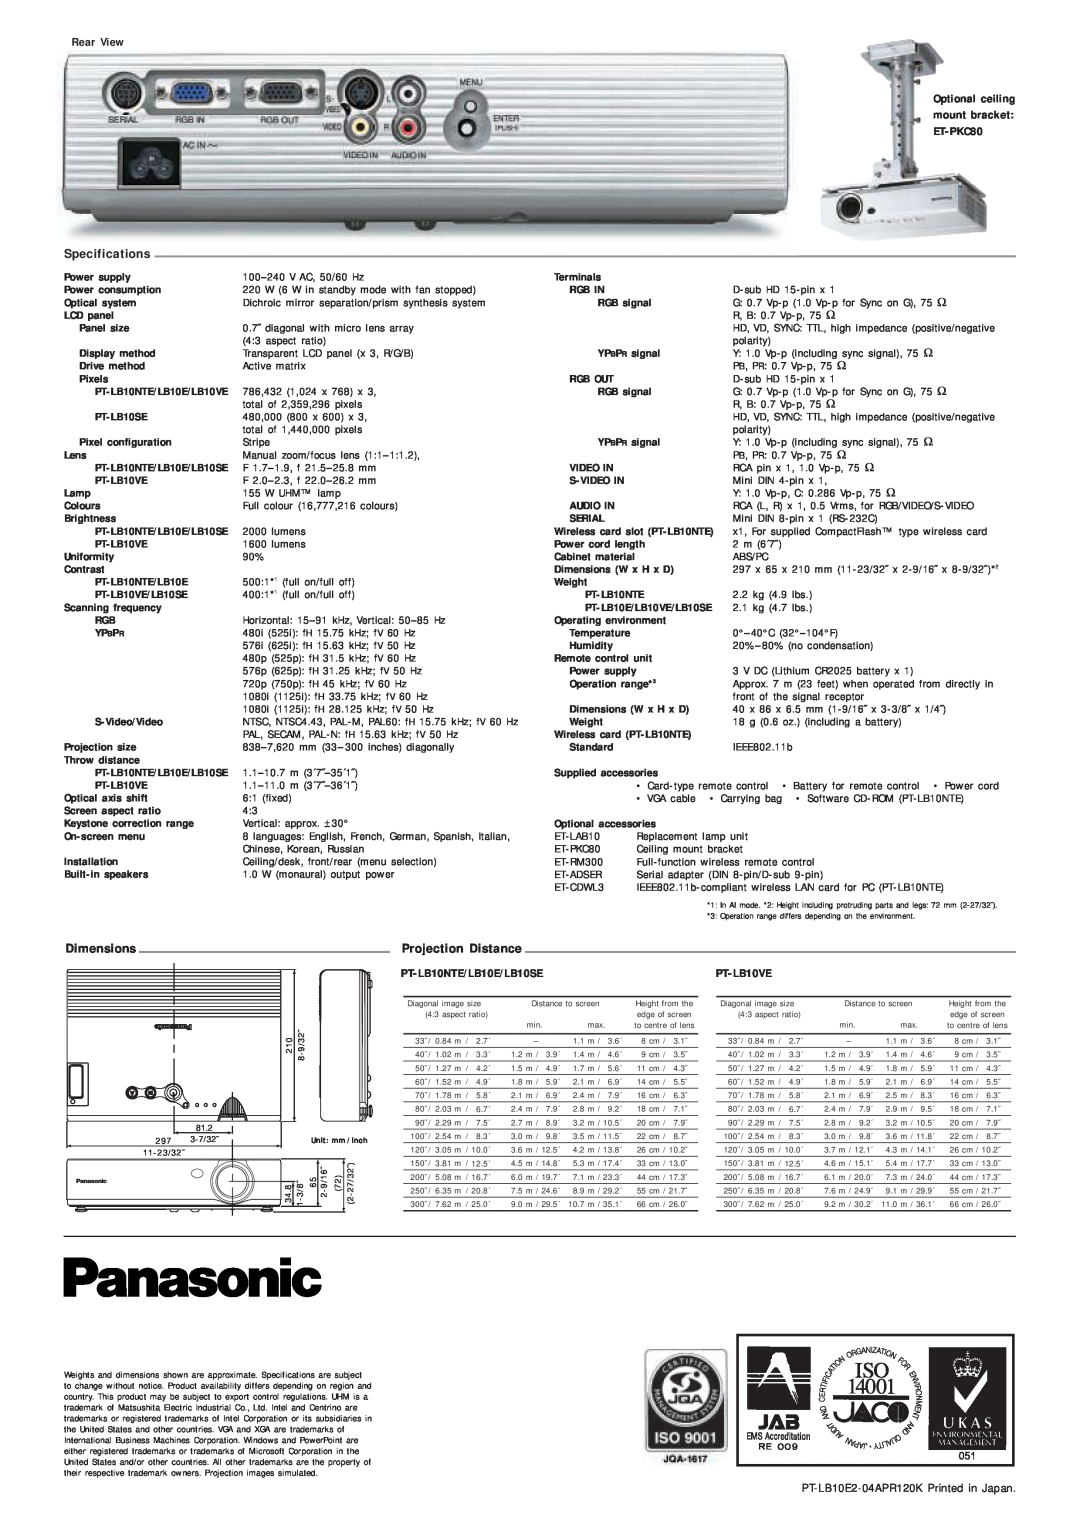 Panasonic PT-LB10VE Specifications, Dimensions, Projection Distance, Optional ceiling mount bracket ET-PKC80, Temperature 